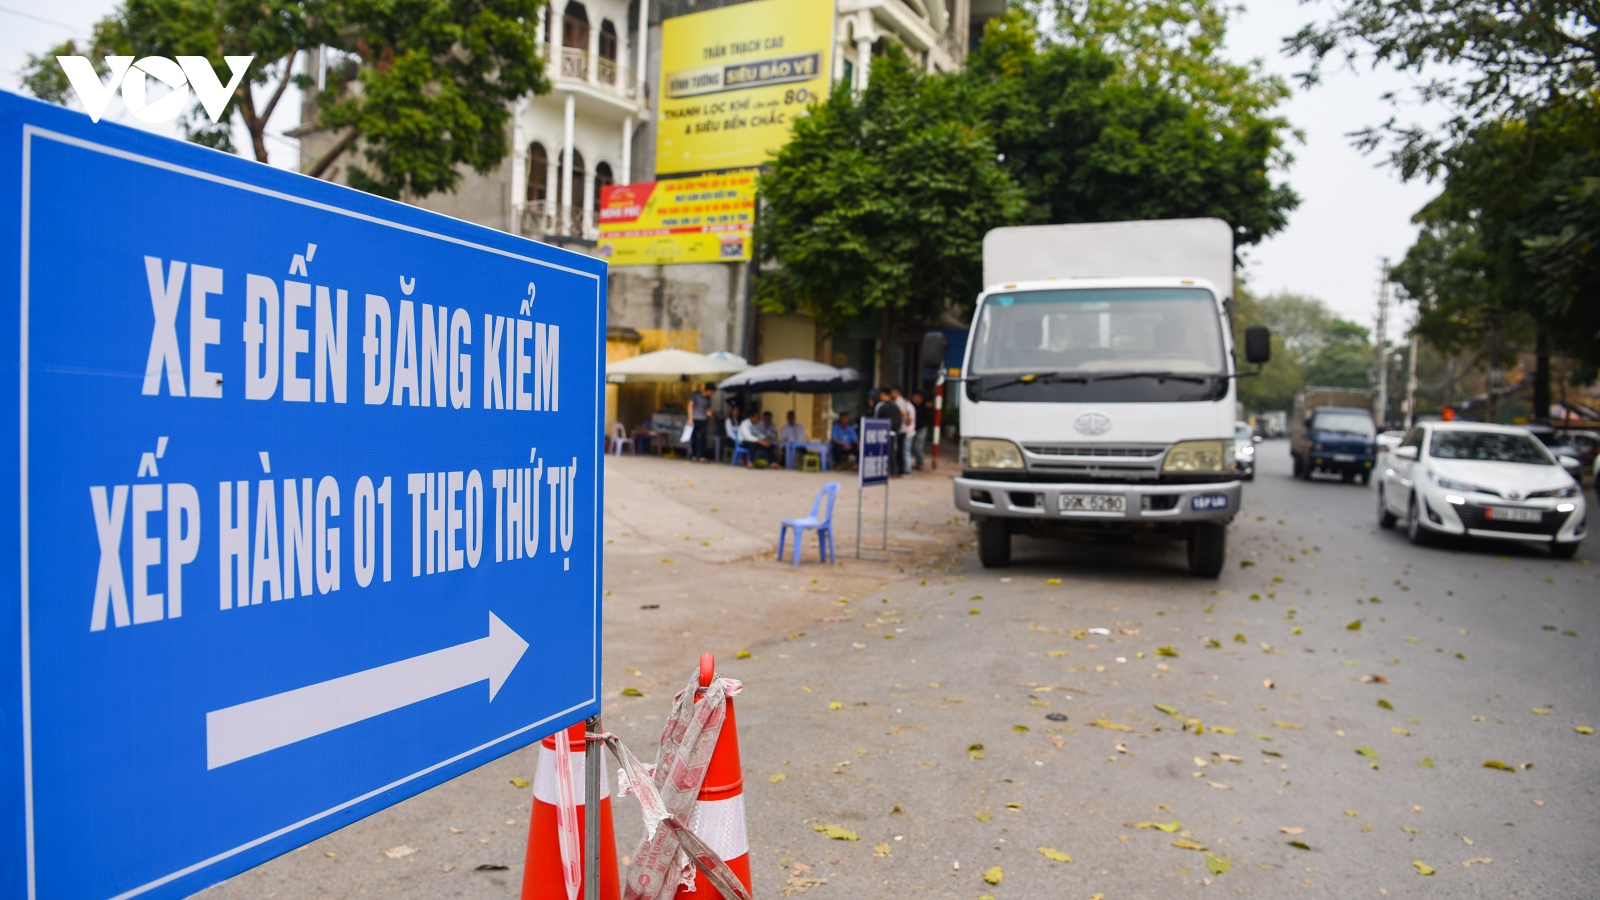 Trung tâm đăng kiểm ở Bắc Ninh quá tải, tài xế xếp hàng từ nửa đêm